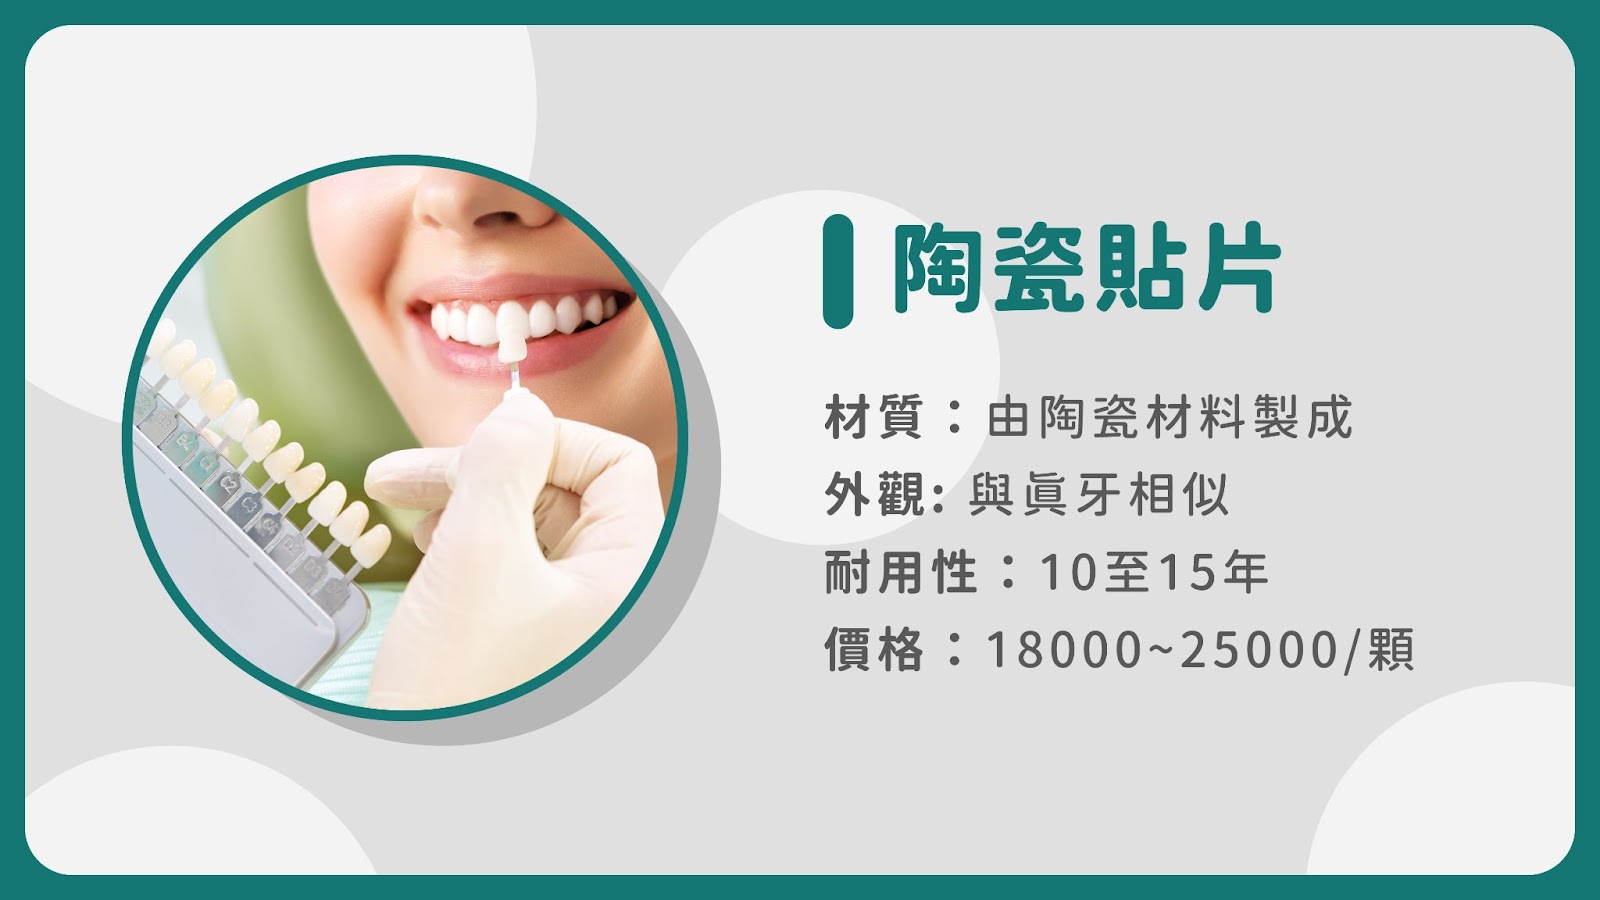 專業牙醫師操作的陶瓷貼片和坊間美容師操作的樹脂美白貼片